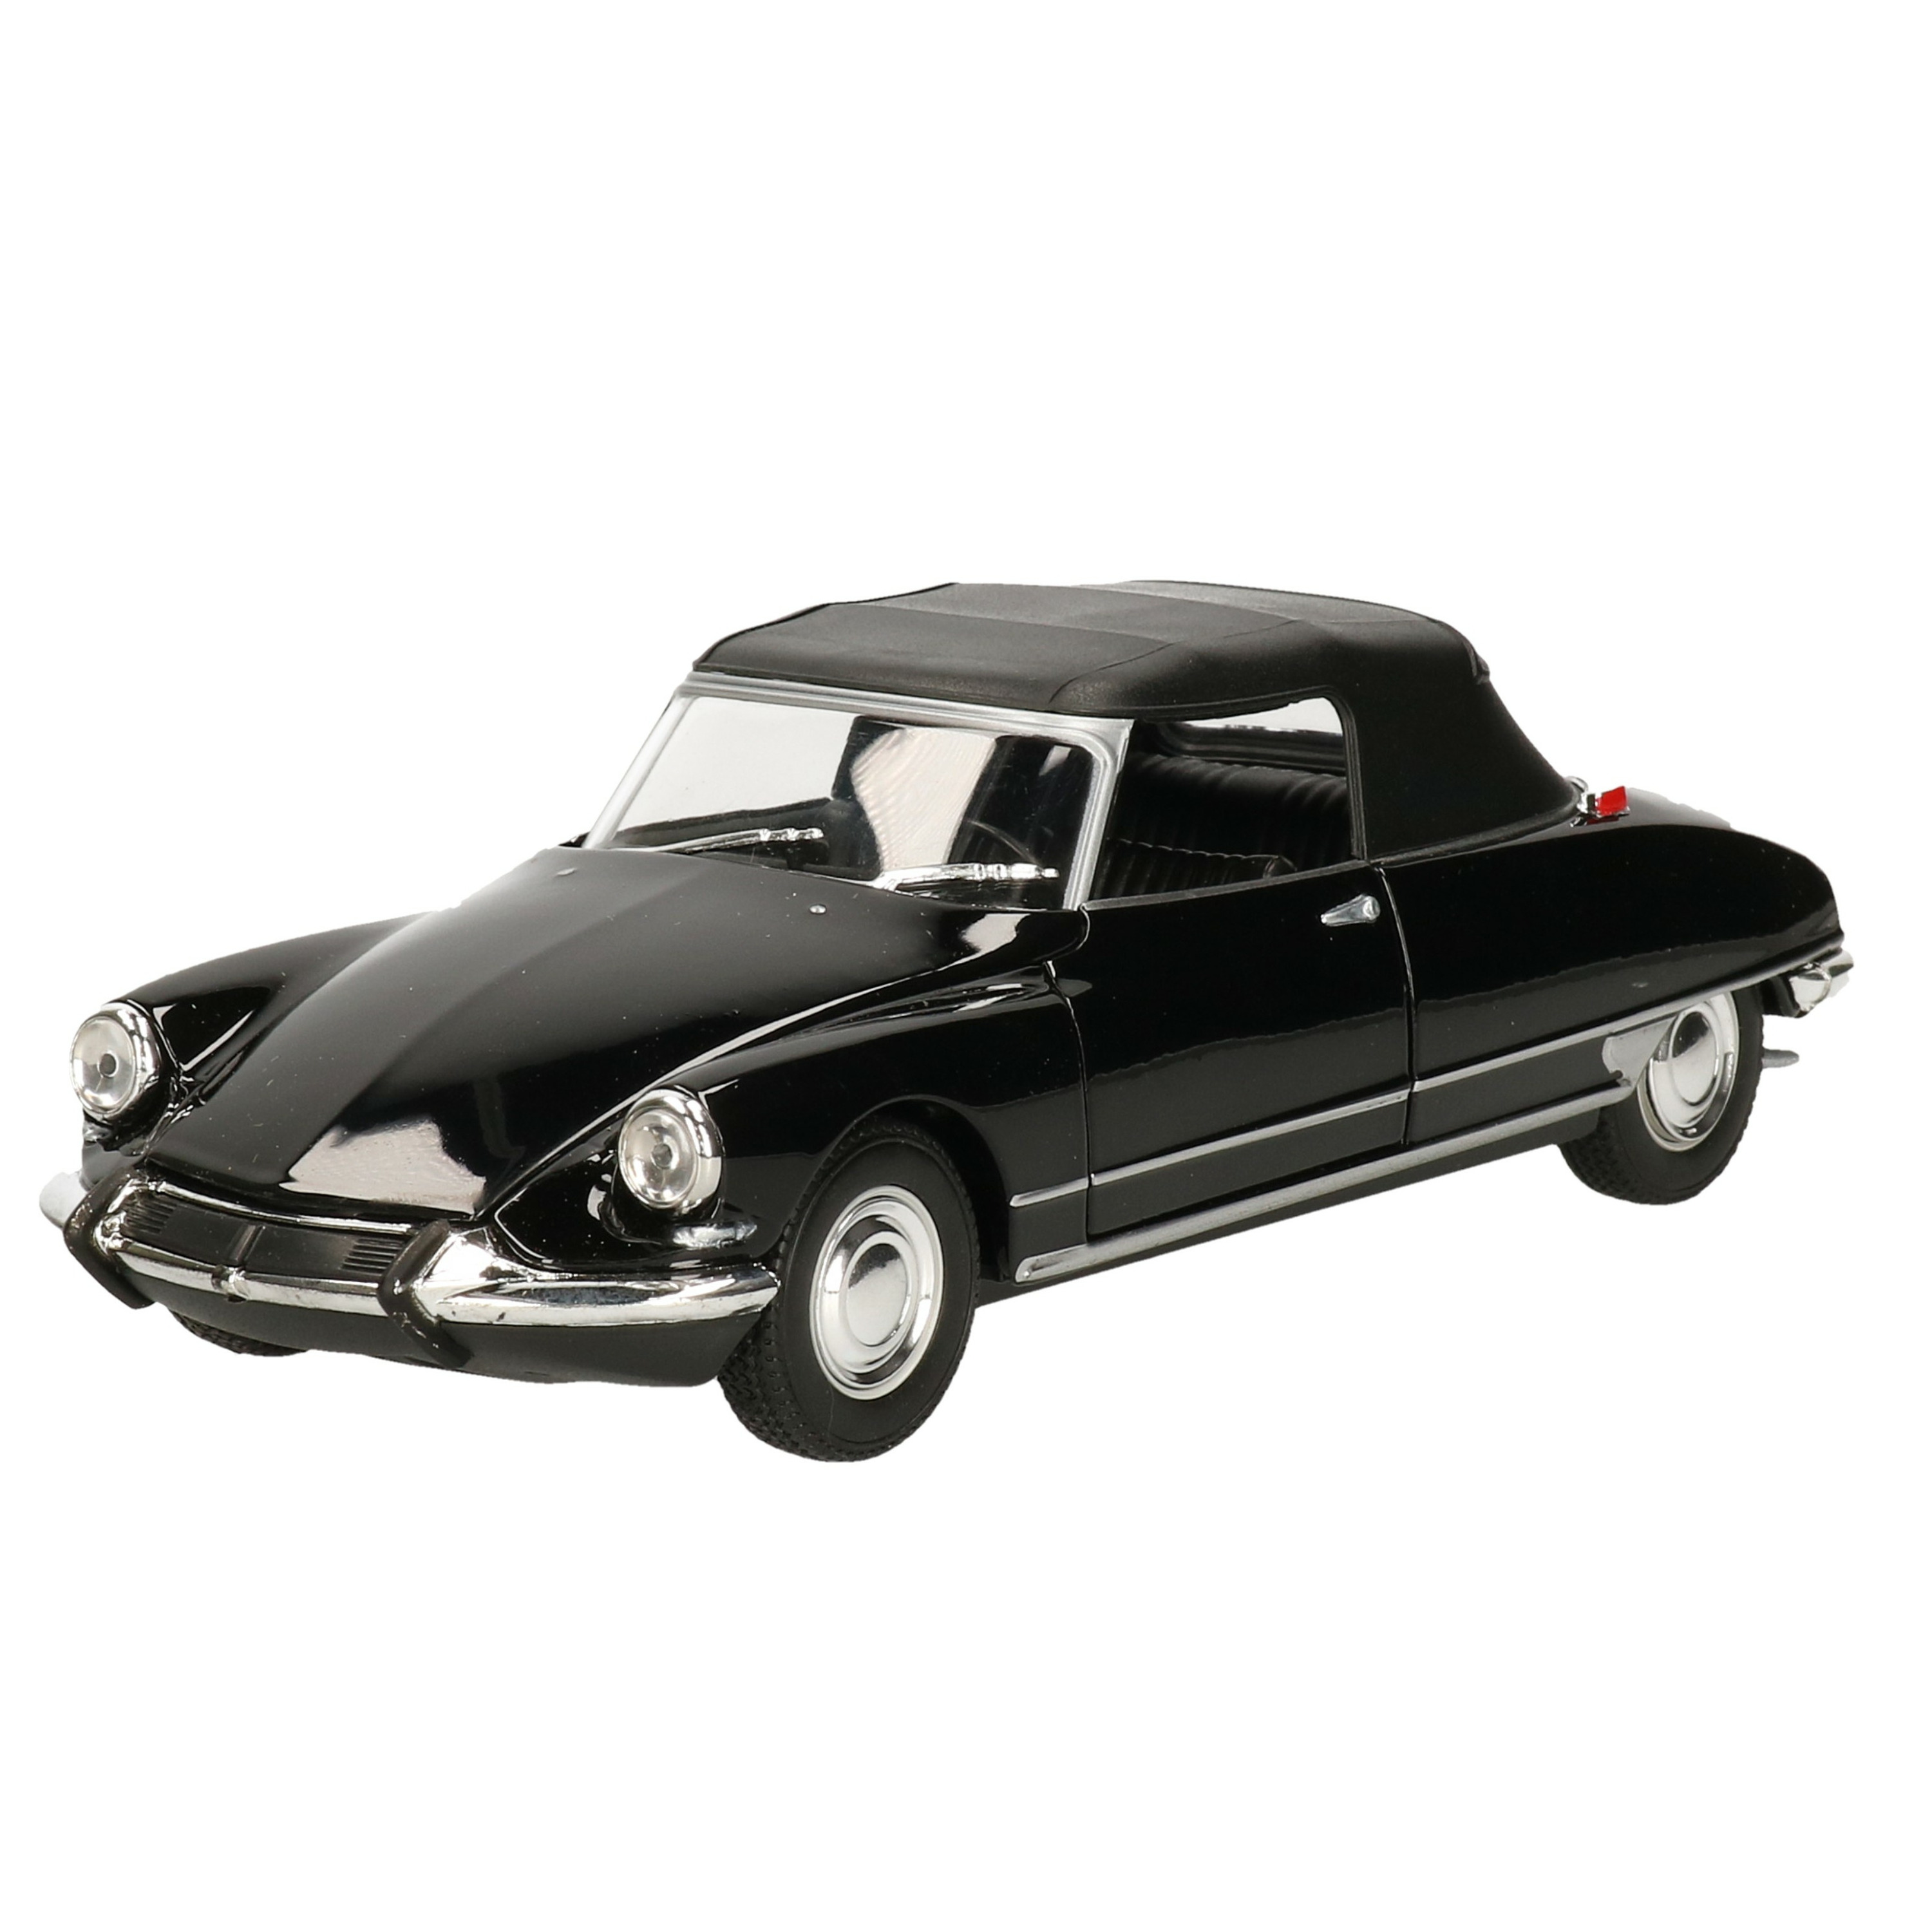 Modelauto-speelgoedauto Citroen DS 19 1965 zwart schaal 1:24-20 x 7 x 6 cm